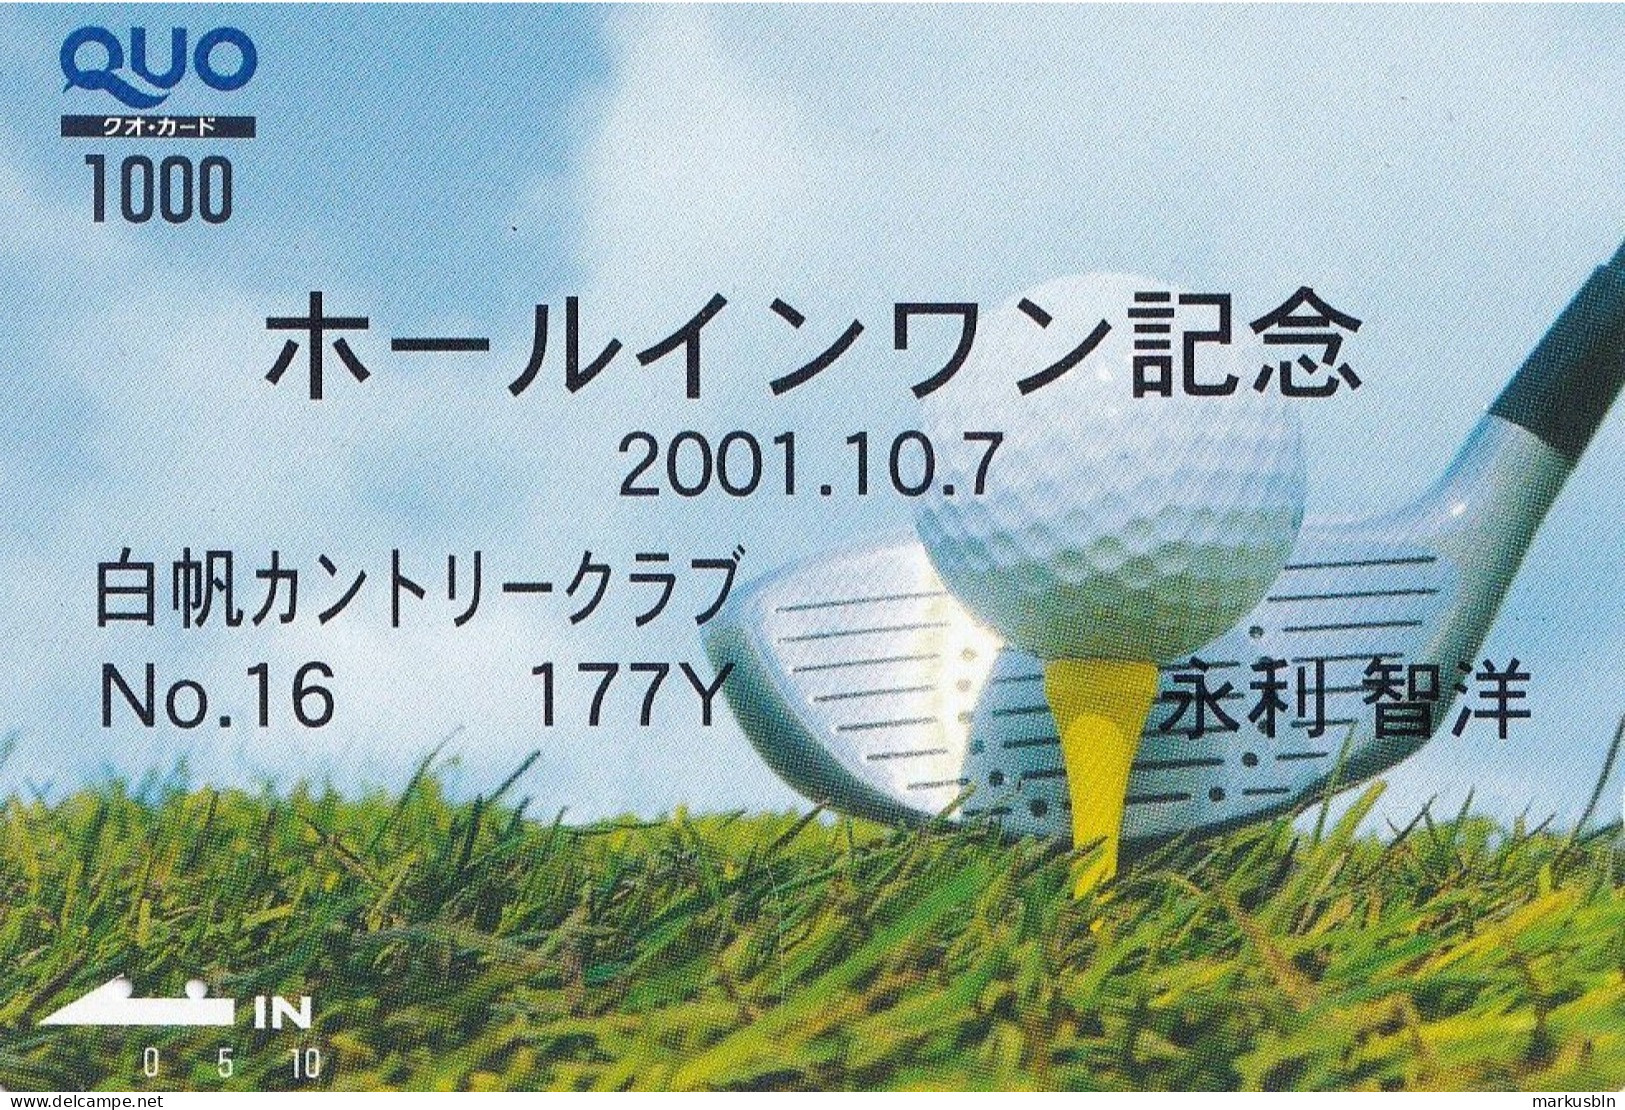 Japan Prepaid Quo Card 1000 - Golf - Black Text - Japan